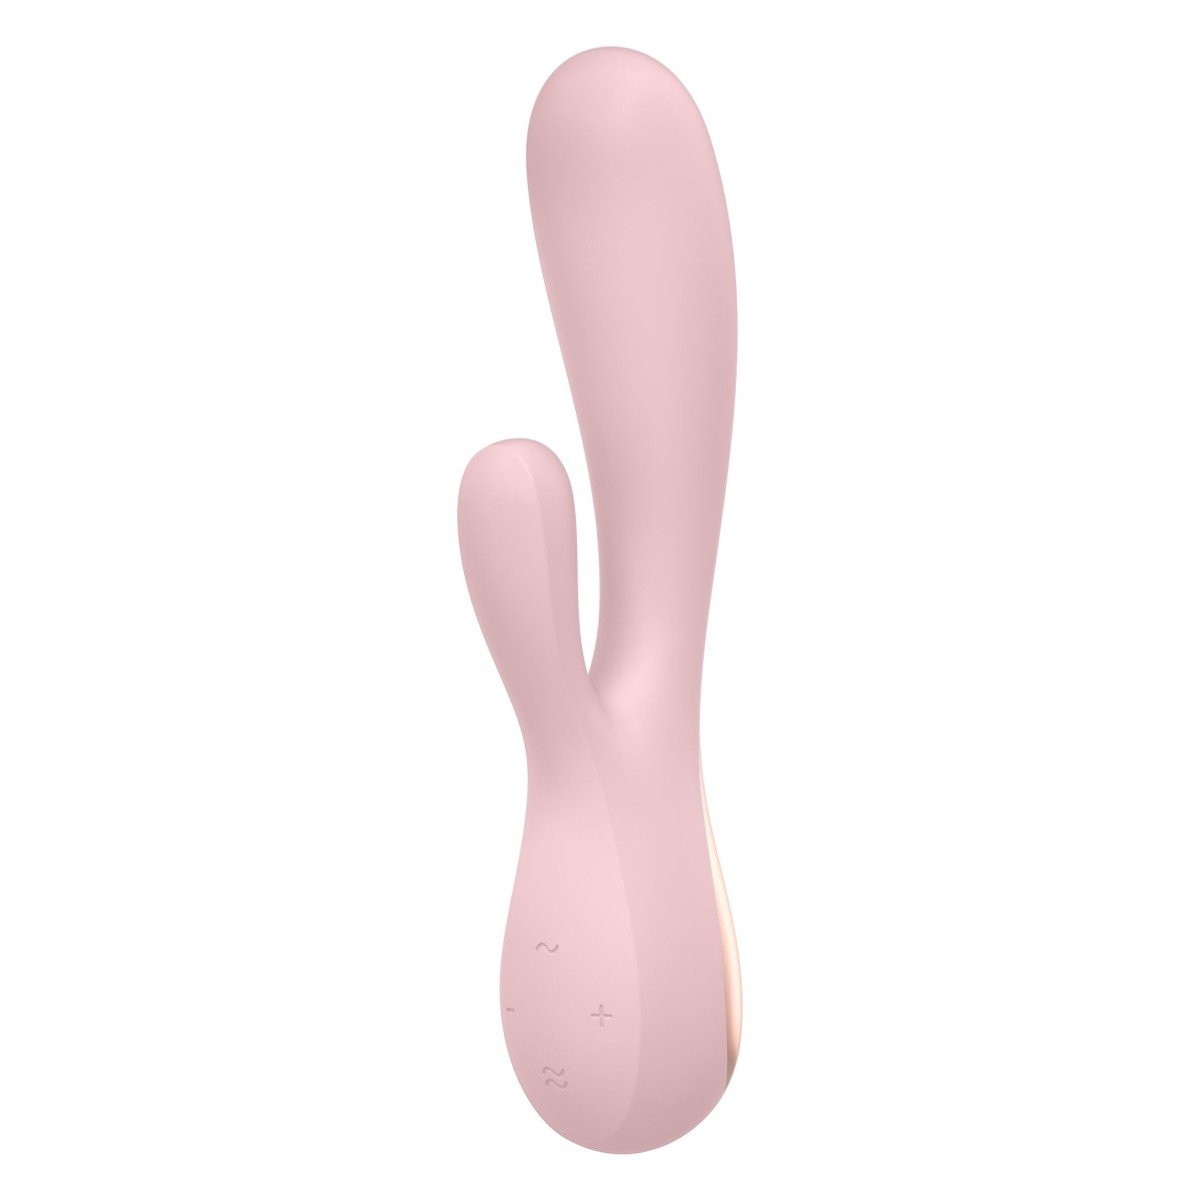 Silikonový vibrátor Satisfyer Mono Flex růžový, chytrý ohebný vibrátor na G-bod a klitoris 19,6 x 3,5 cm